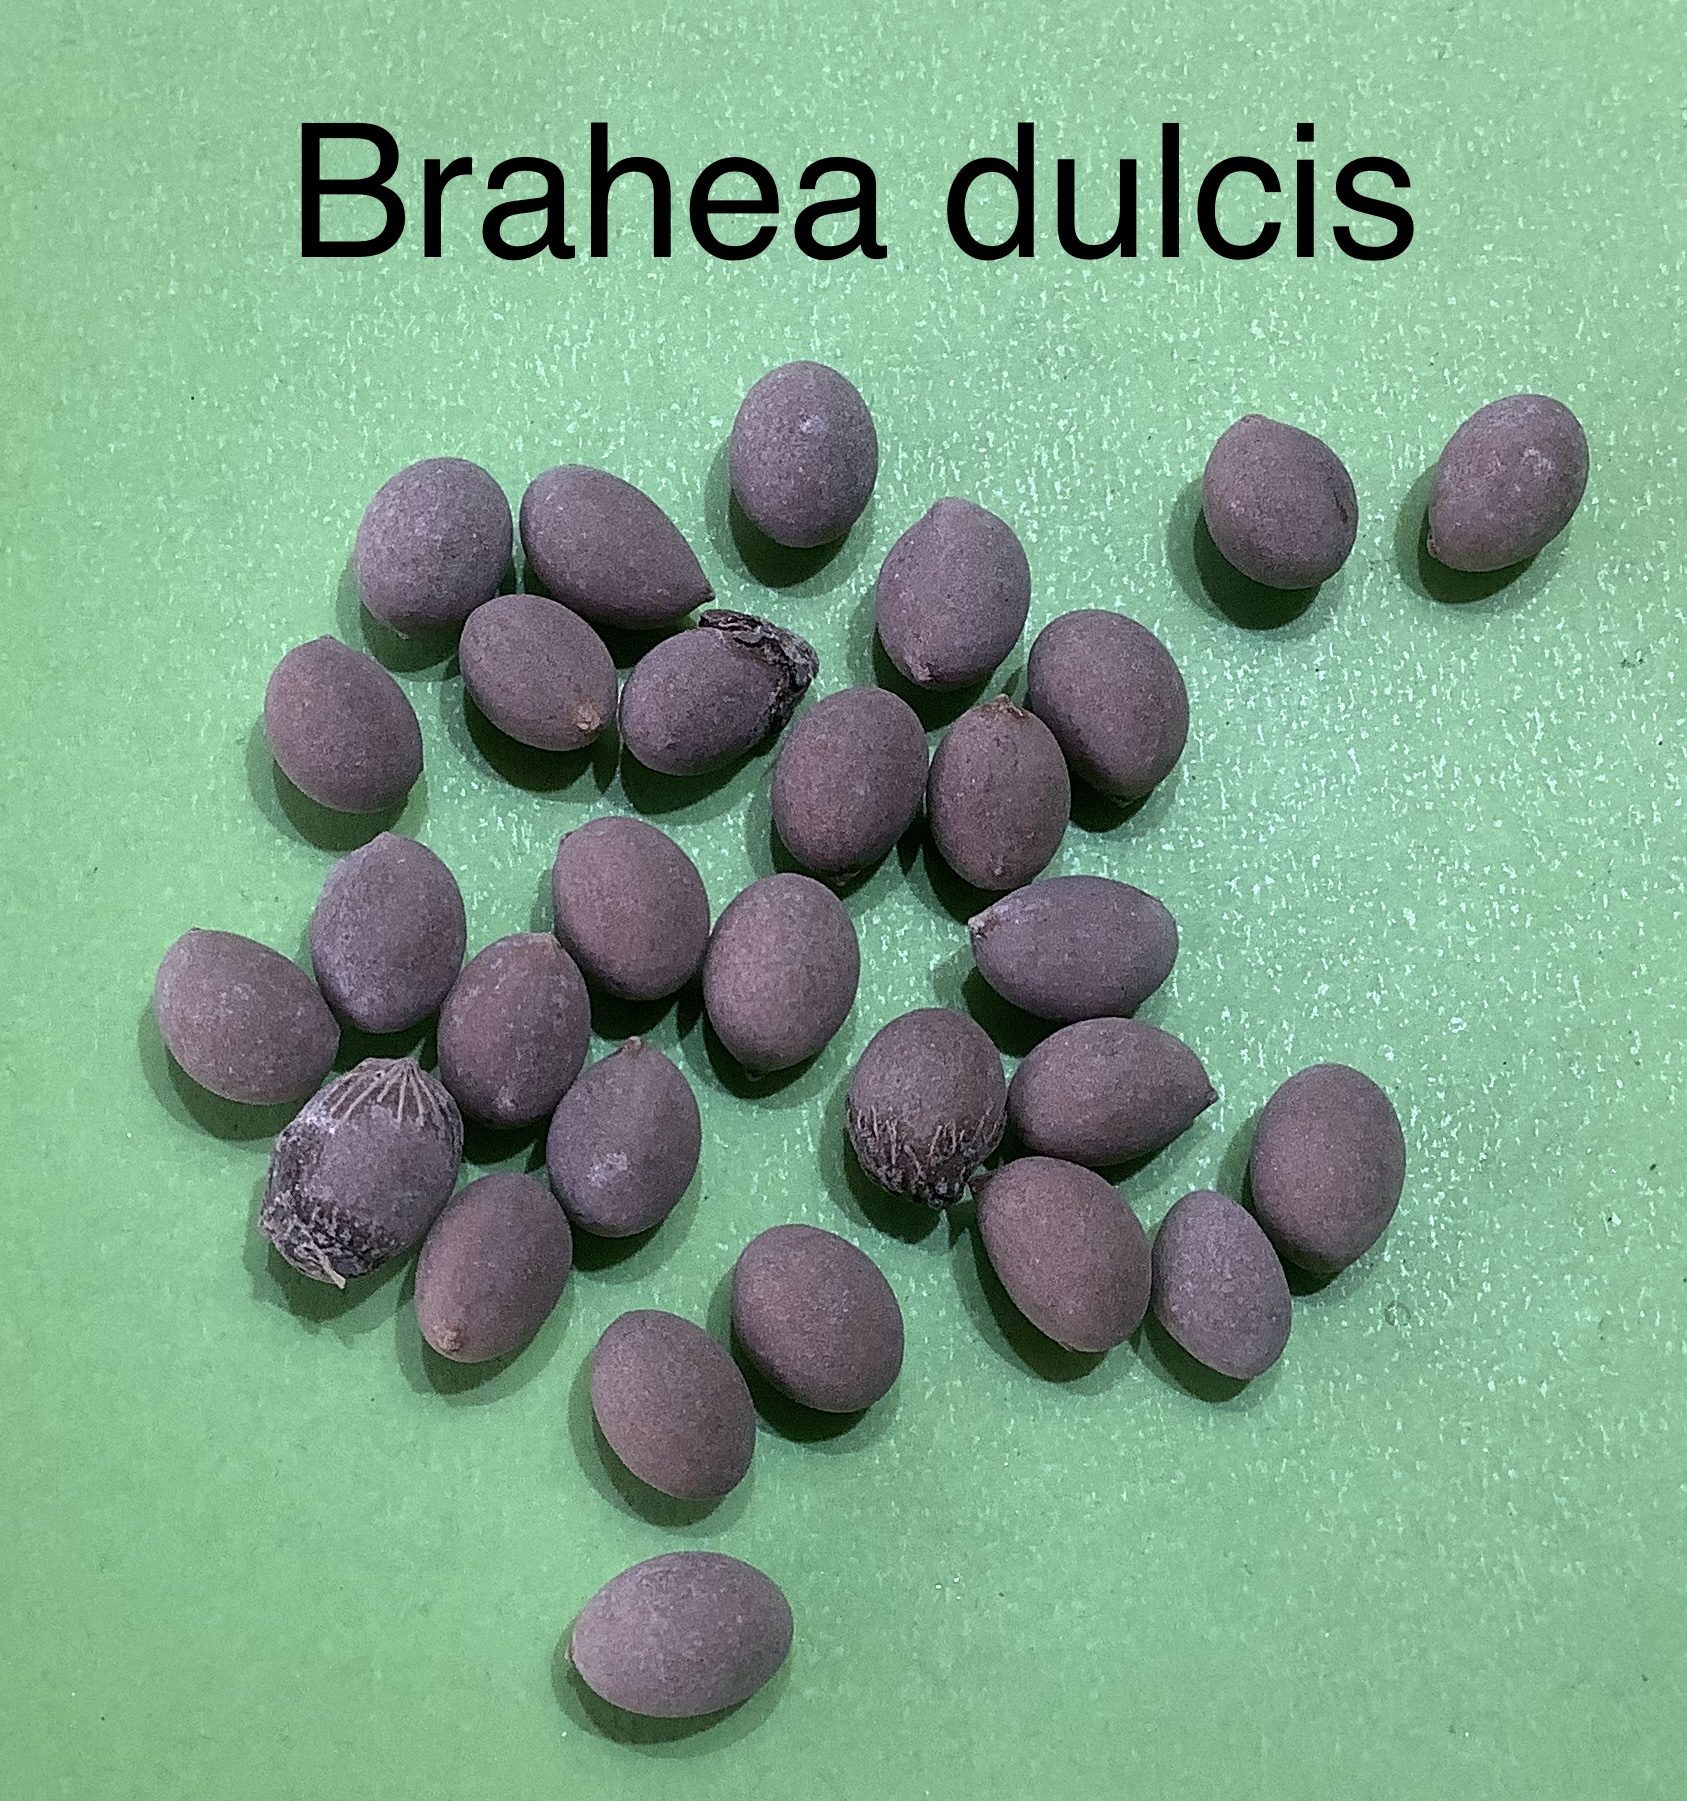 73 Brahea dulcis